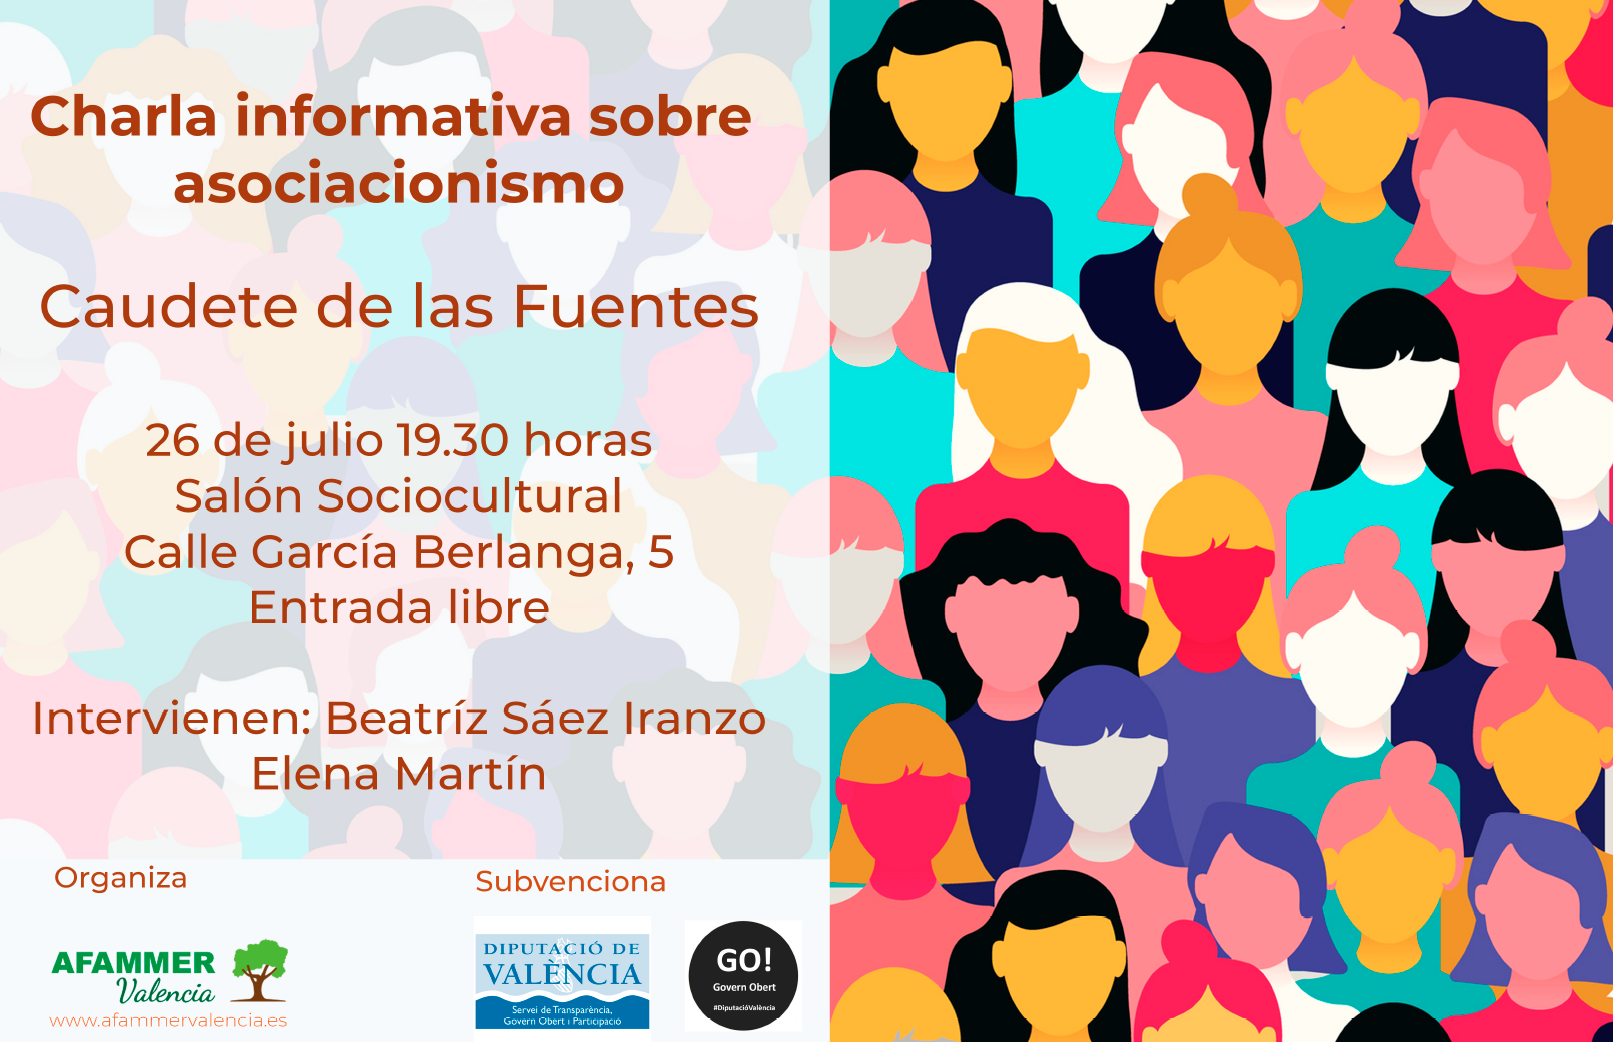 AFAMMER Valencia inicia su ciclo de charlas sobre asociacionismo en Caudete de las Fuentes